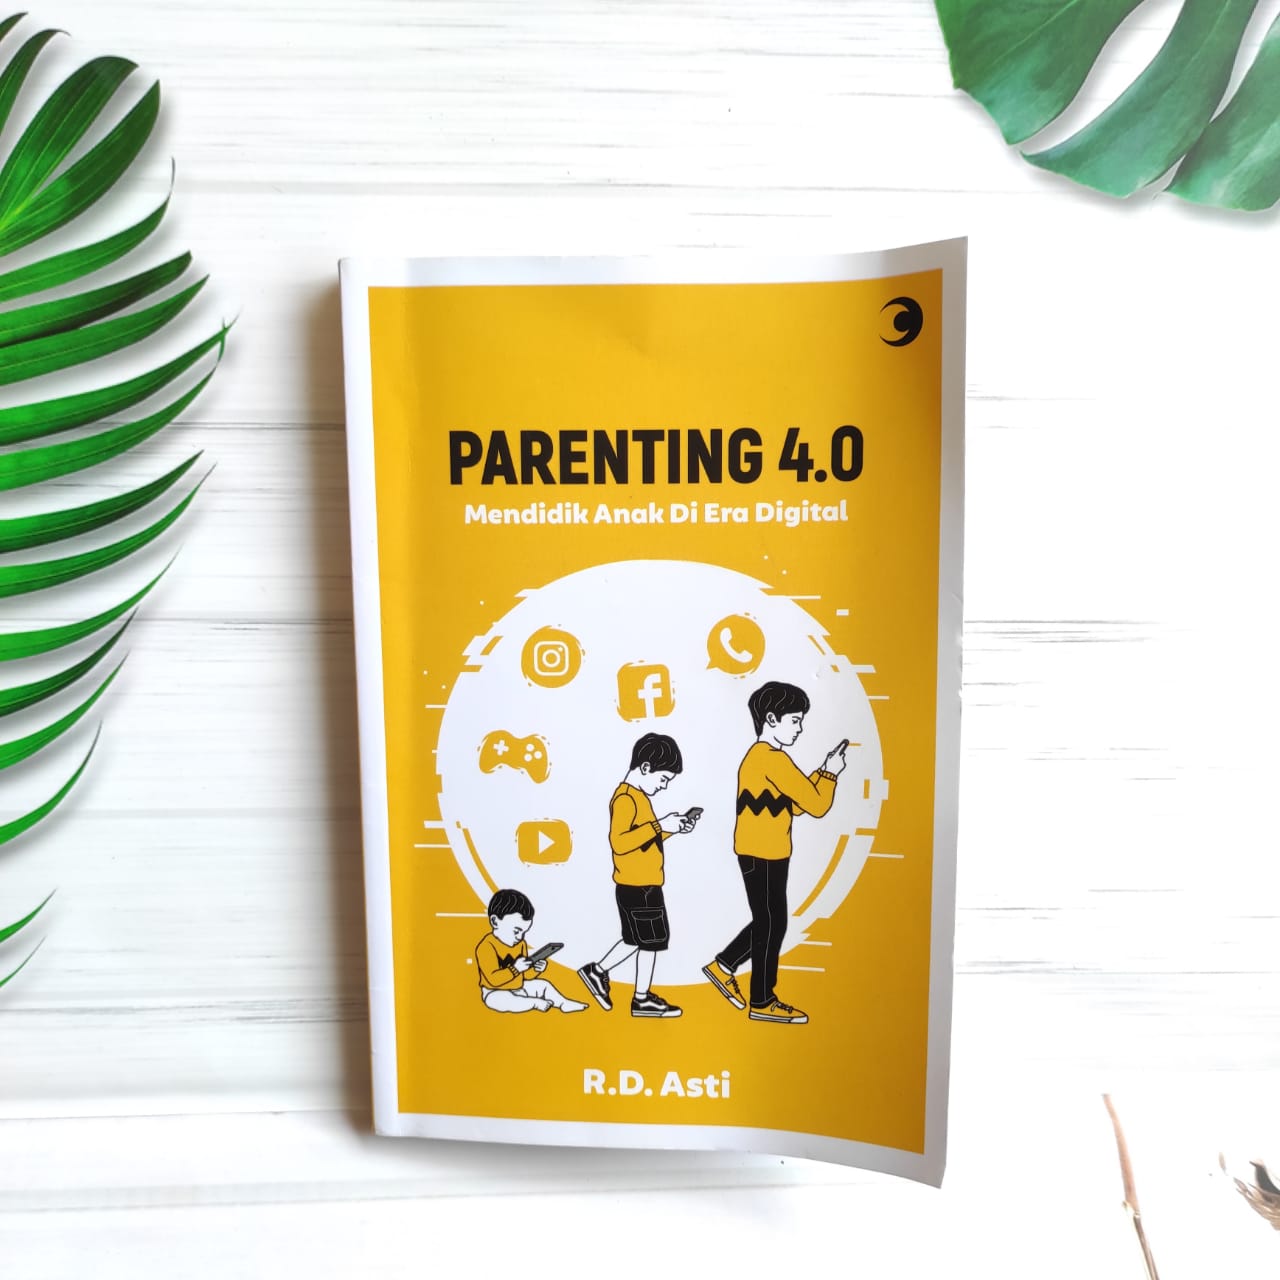 Parenting 4.0 Sebuah Harapan dari Generasi Millenial untuk Generasi Z